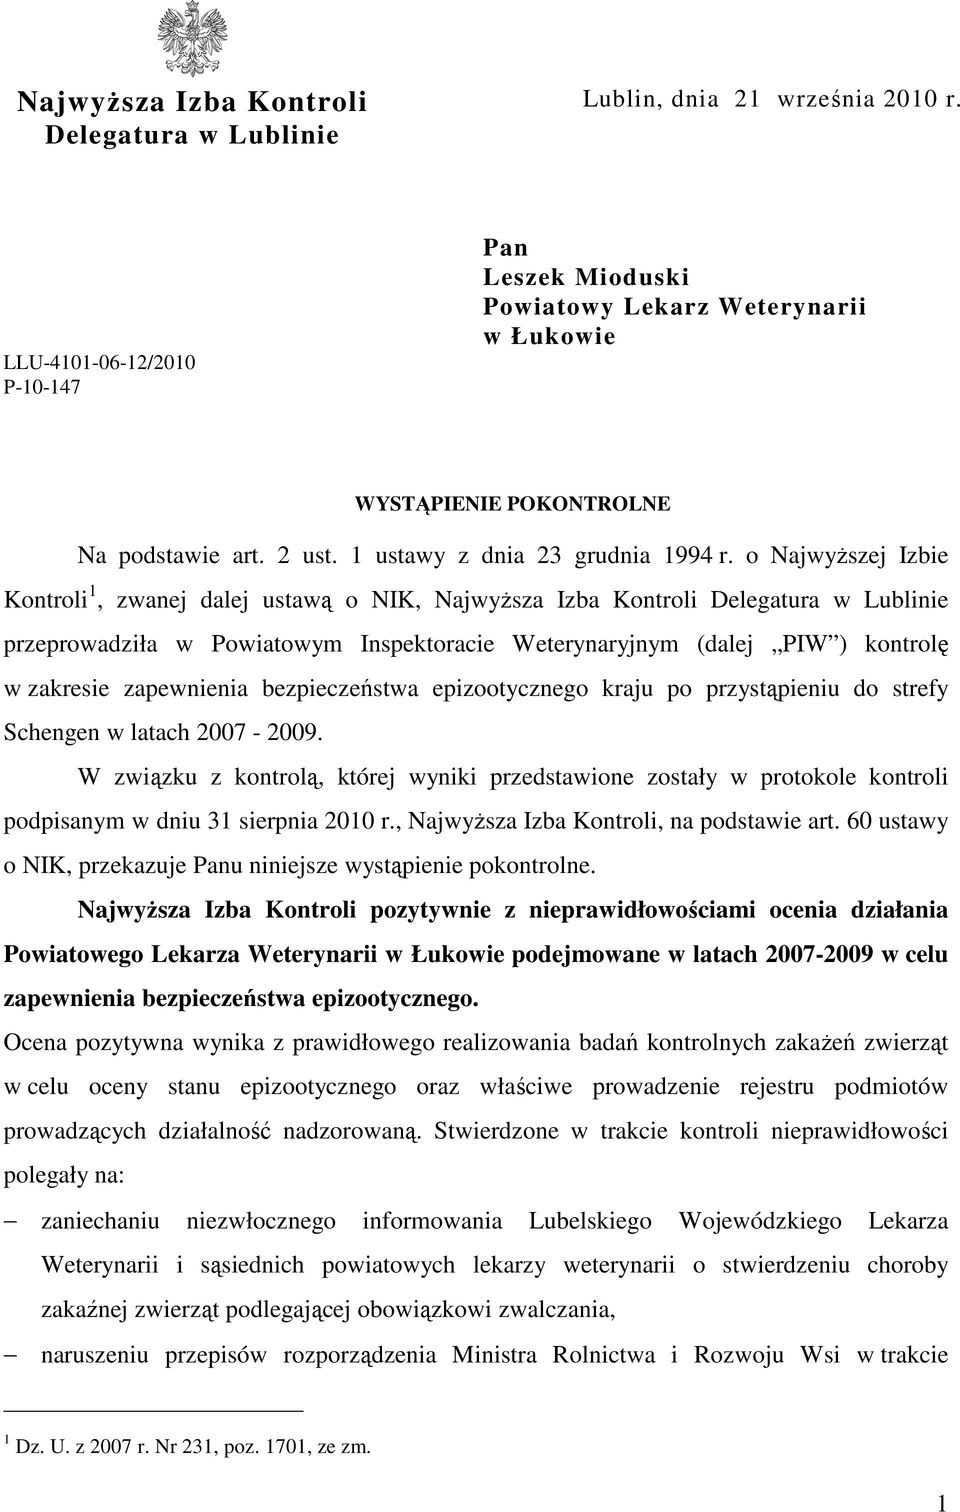 o NajwyŜszej Izbie Kontroli 1, zwanej dalej ustawą o NIK, NajwyŜsza Izba Kontroli Delegatura w Lublinie przeprowadziła w Powiatowym Inspektoracie Weterynaryjnym (dalej PIW ) kontrolę w zakresie